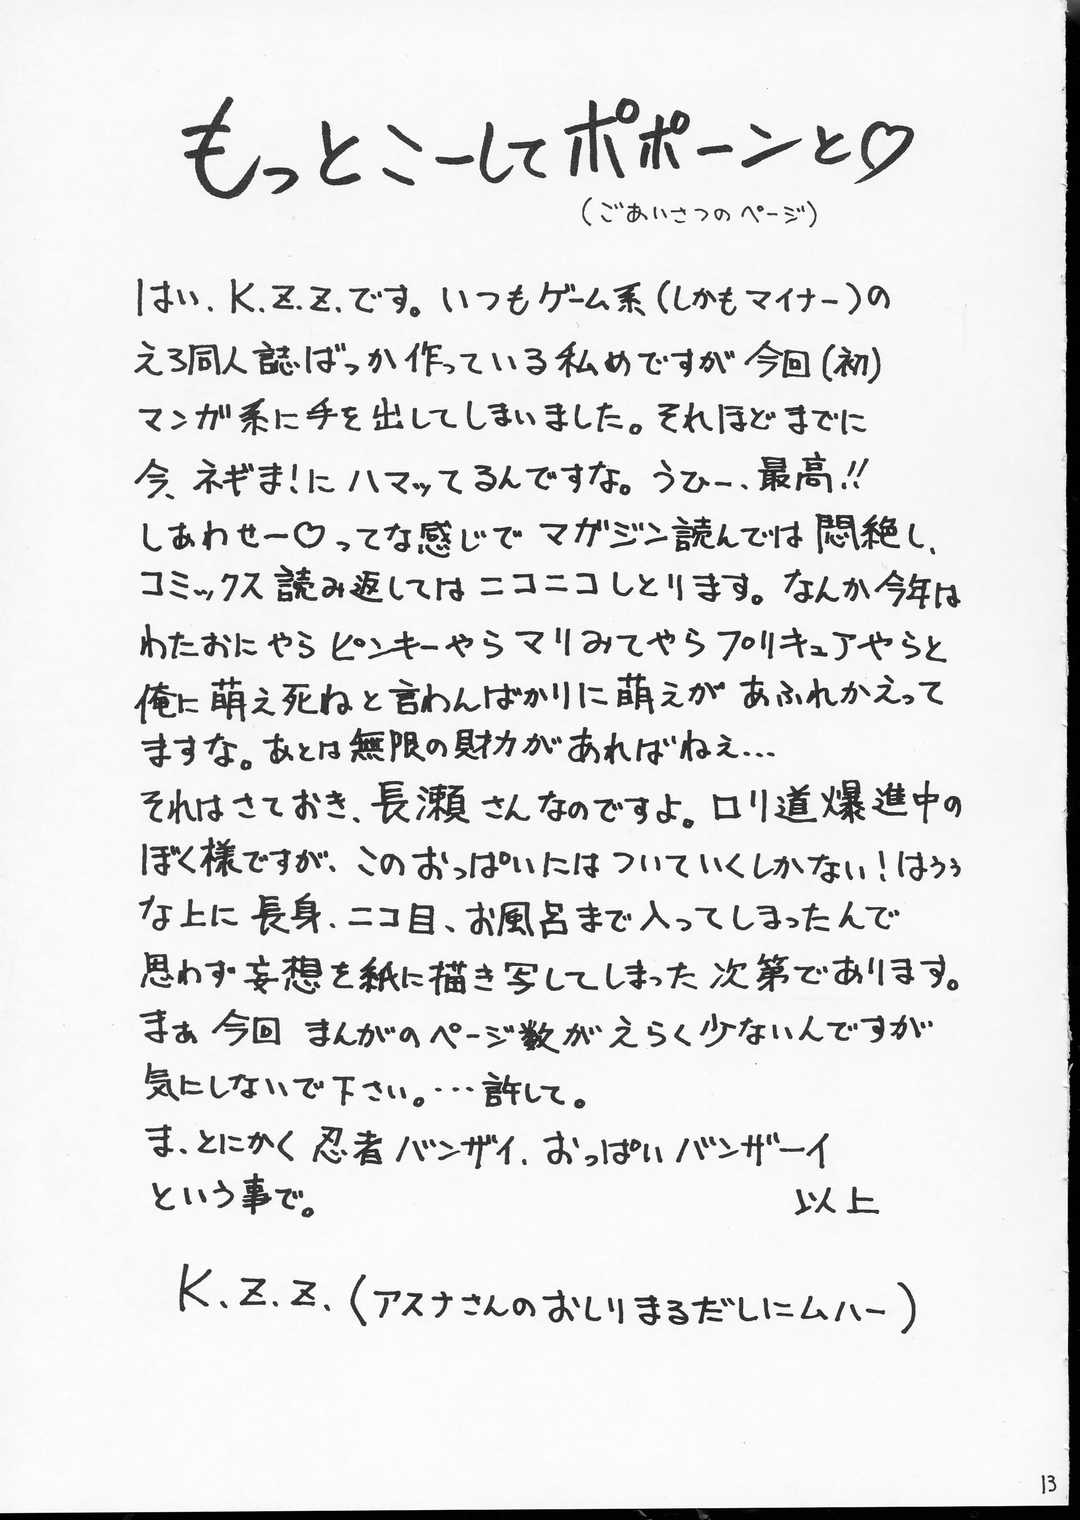 [K.Z.Z. Force] Ai Ai Nagase-San page 12 full